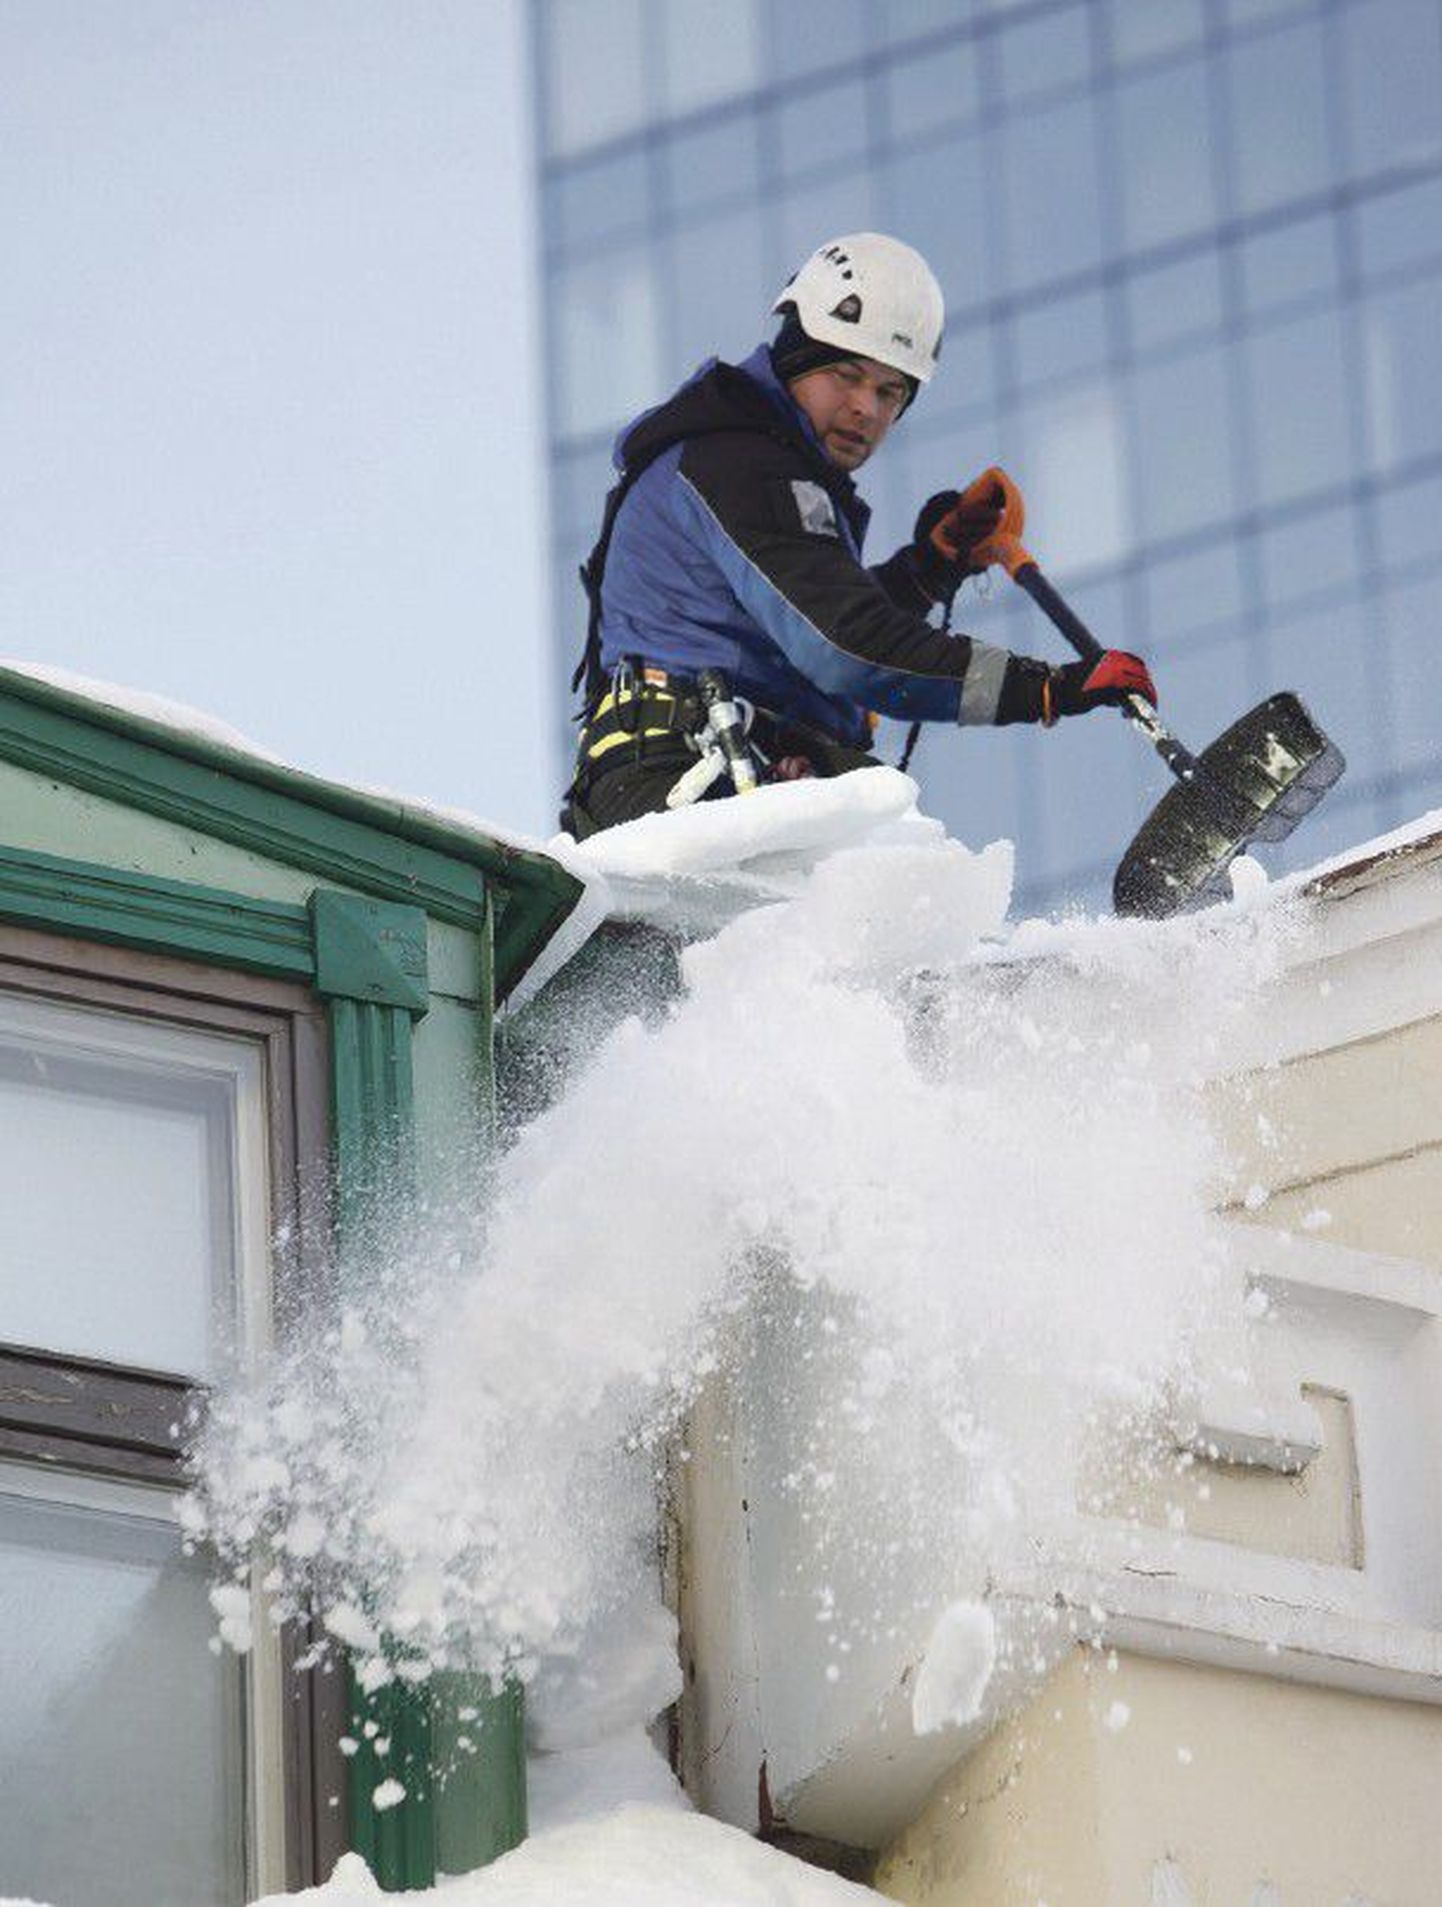 Lumi tuleb katustelt koristada probleeme ennetades ja ohutult.